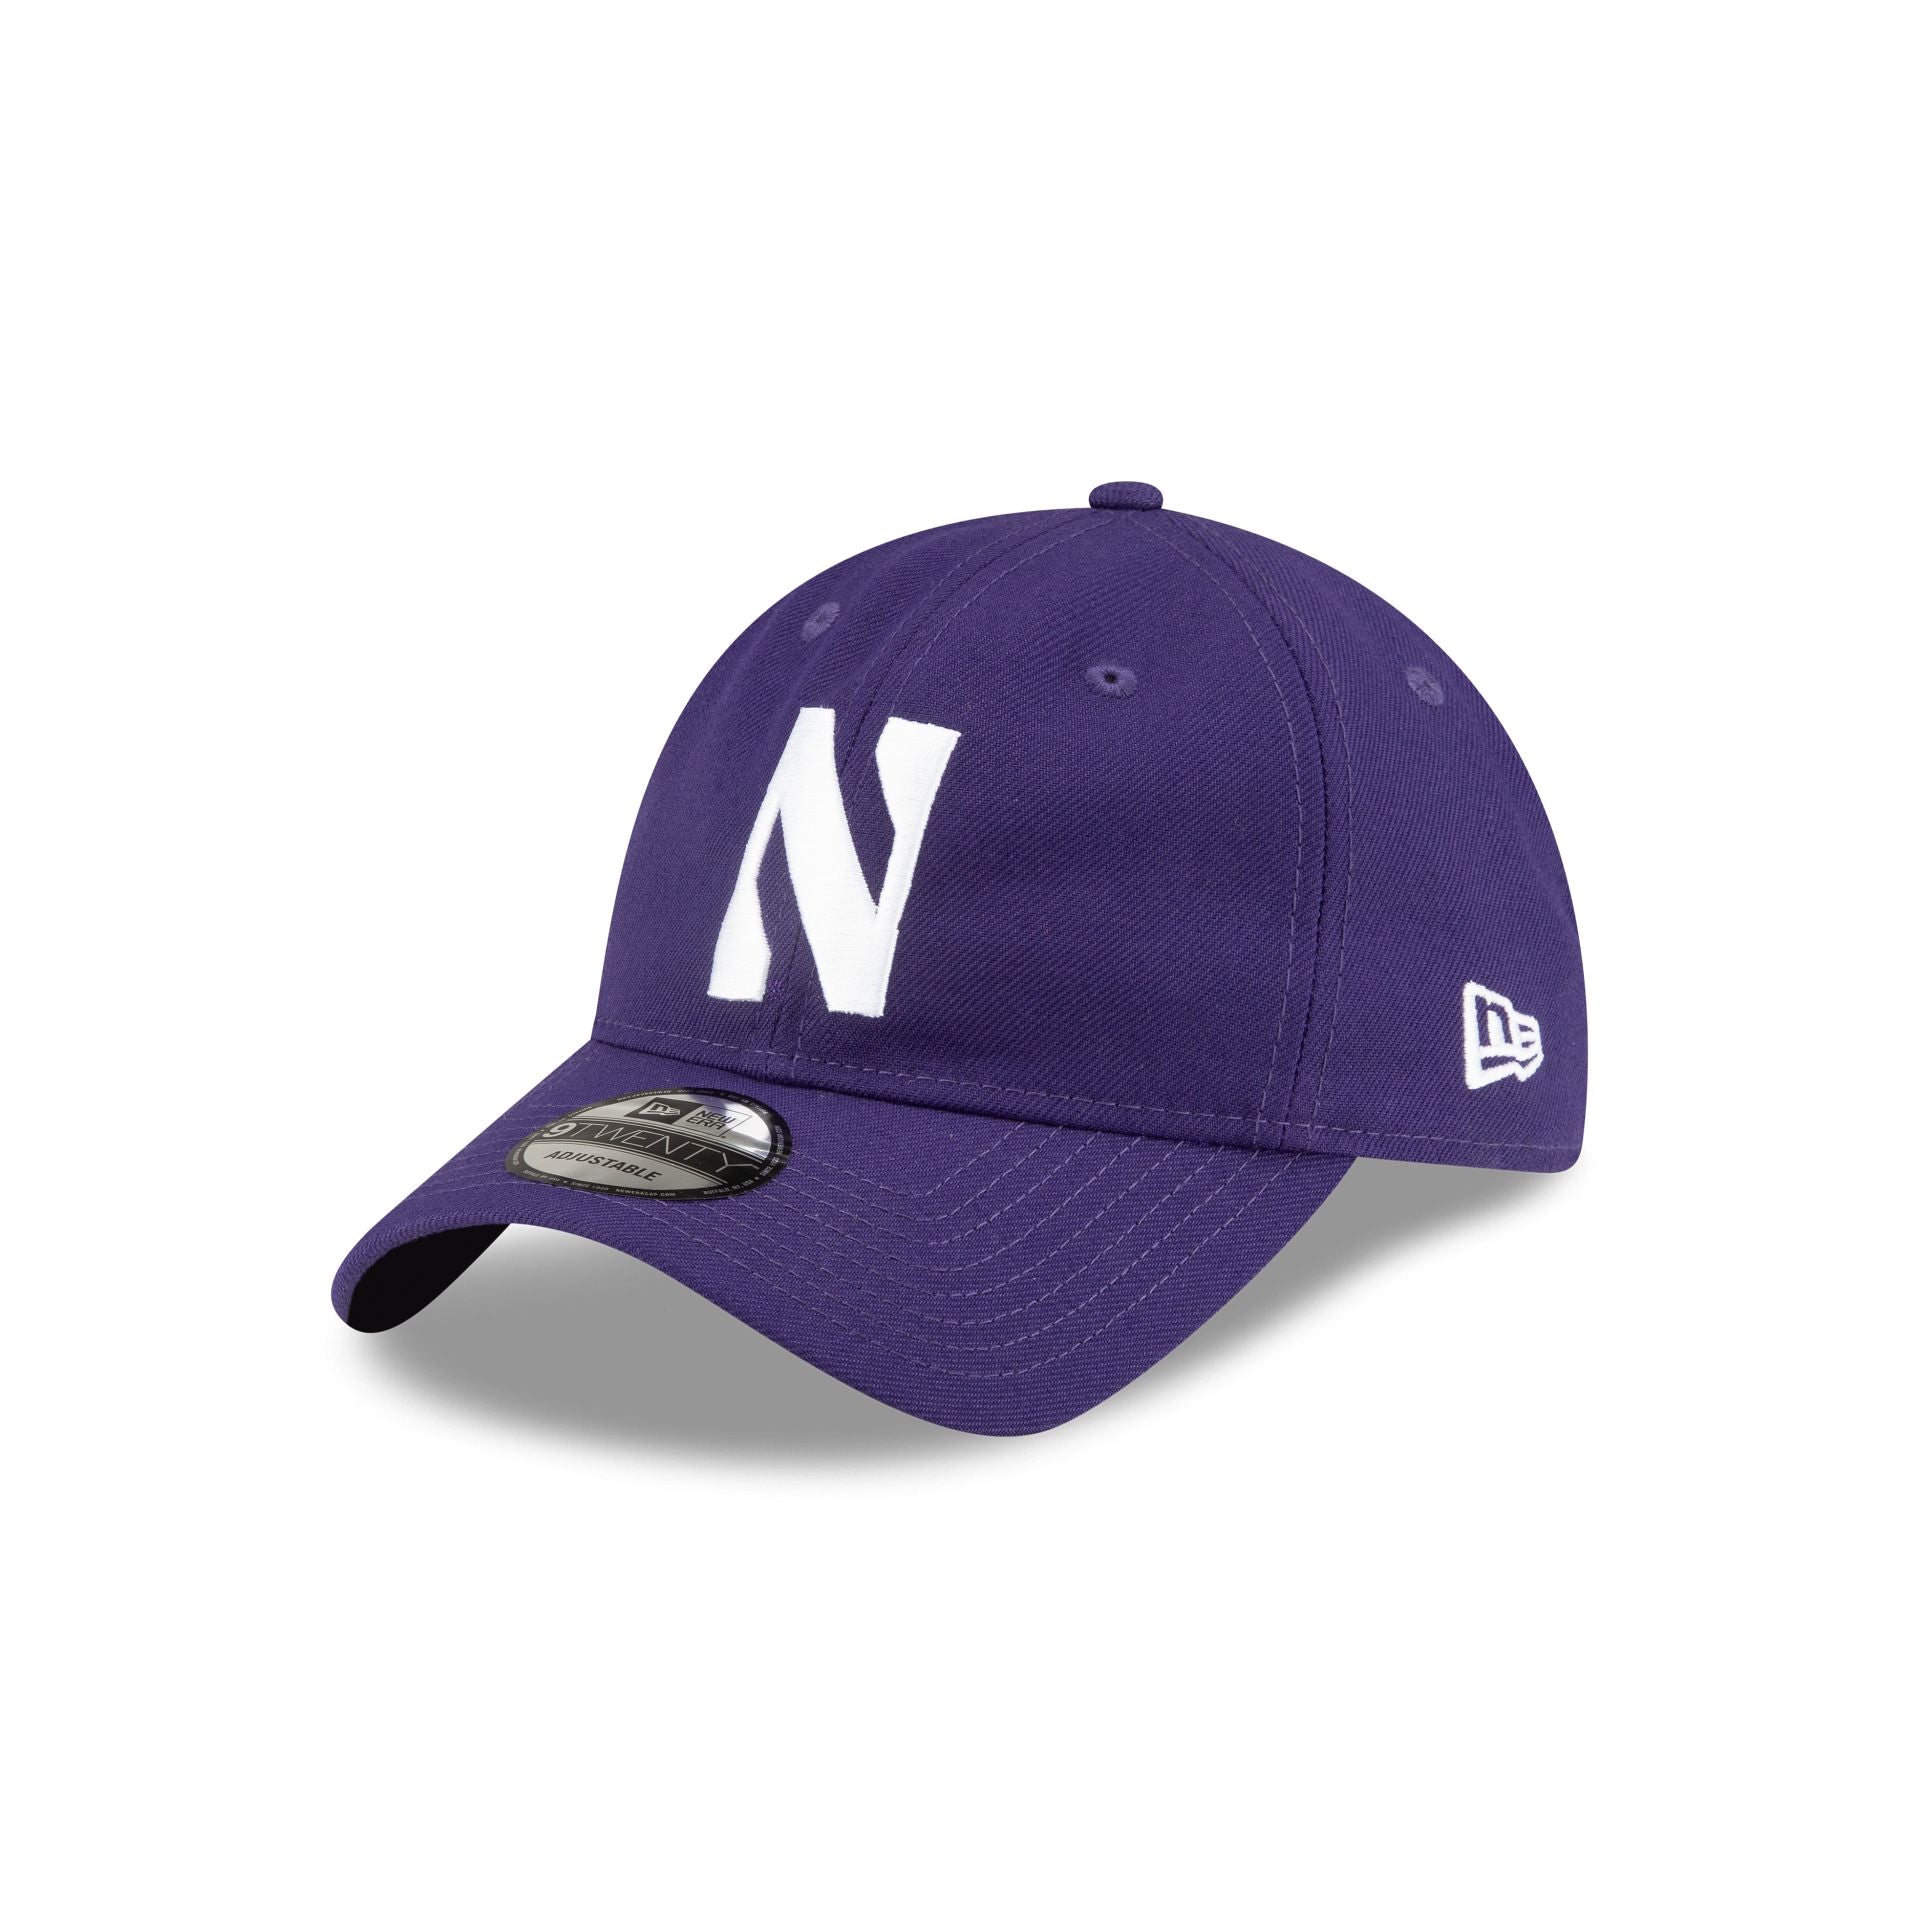 Northwestern Wildcats 9TWENTY Adjustable – New Era Cap